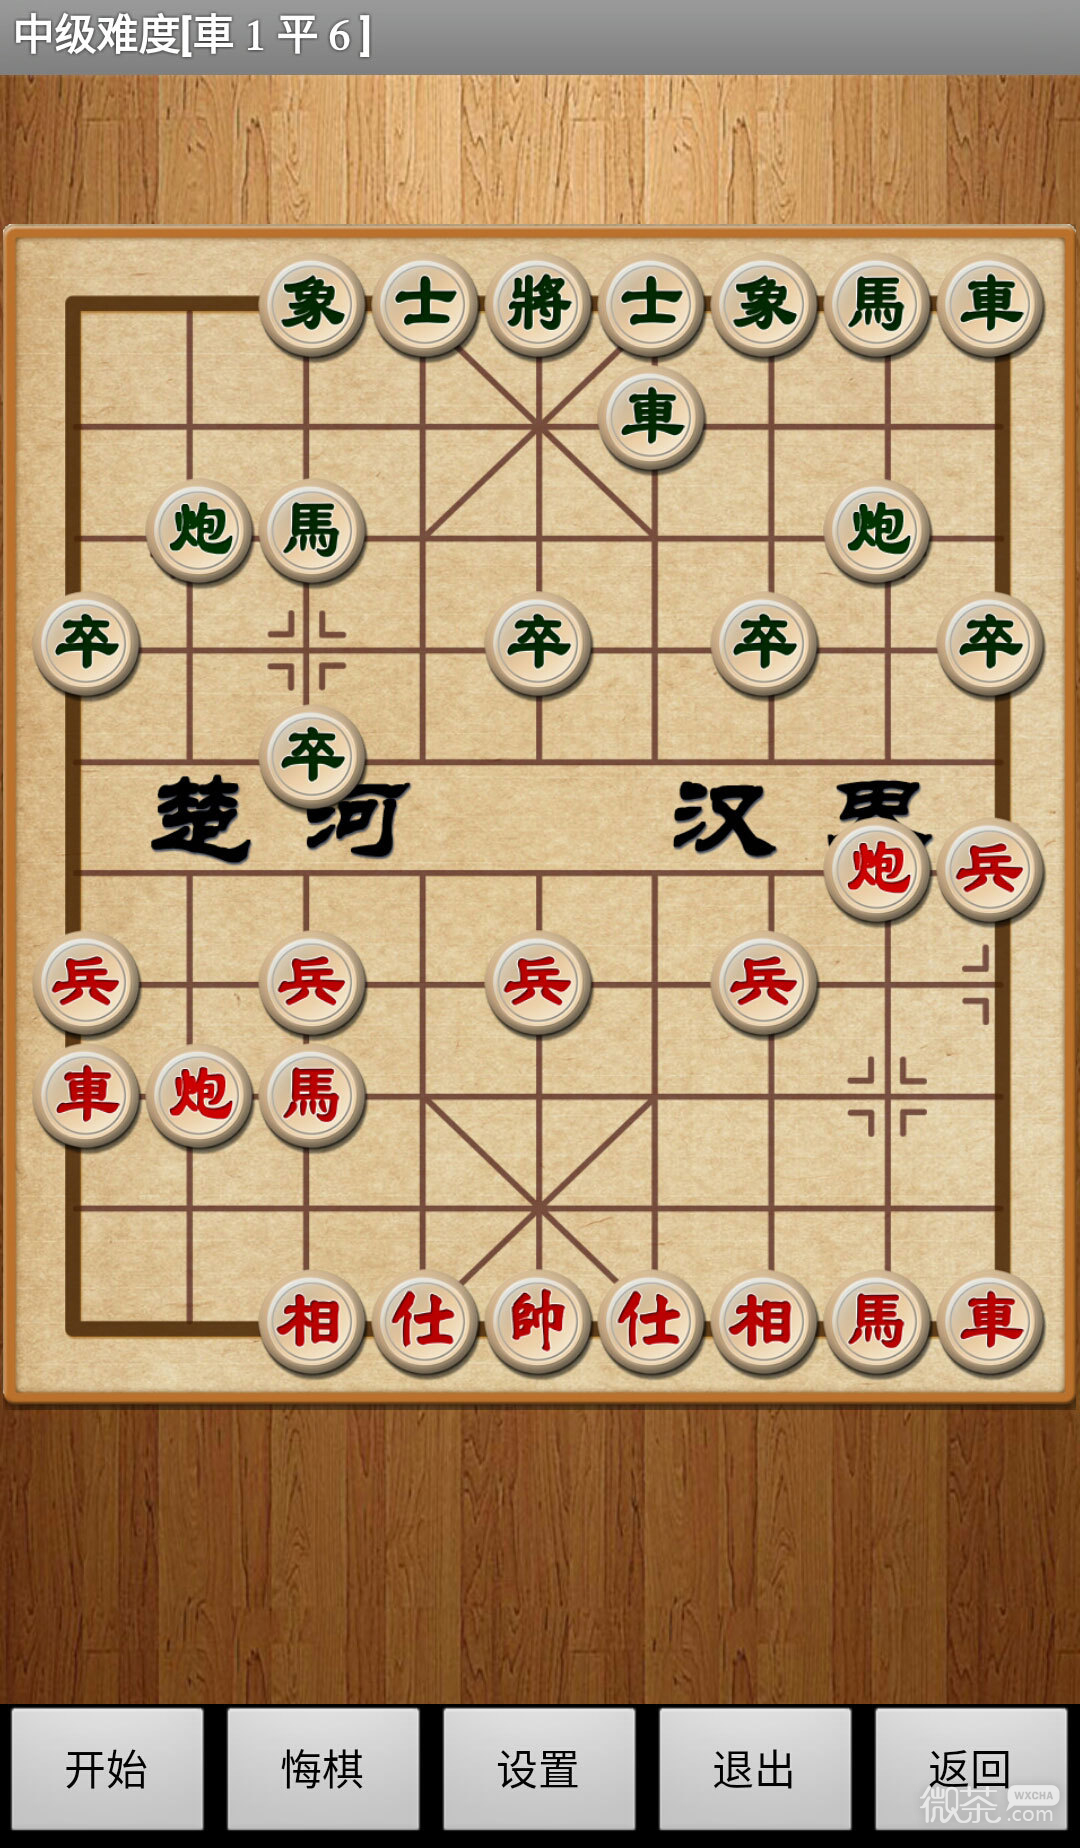 经典中国象棋(轻松组队)